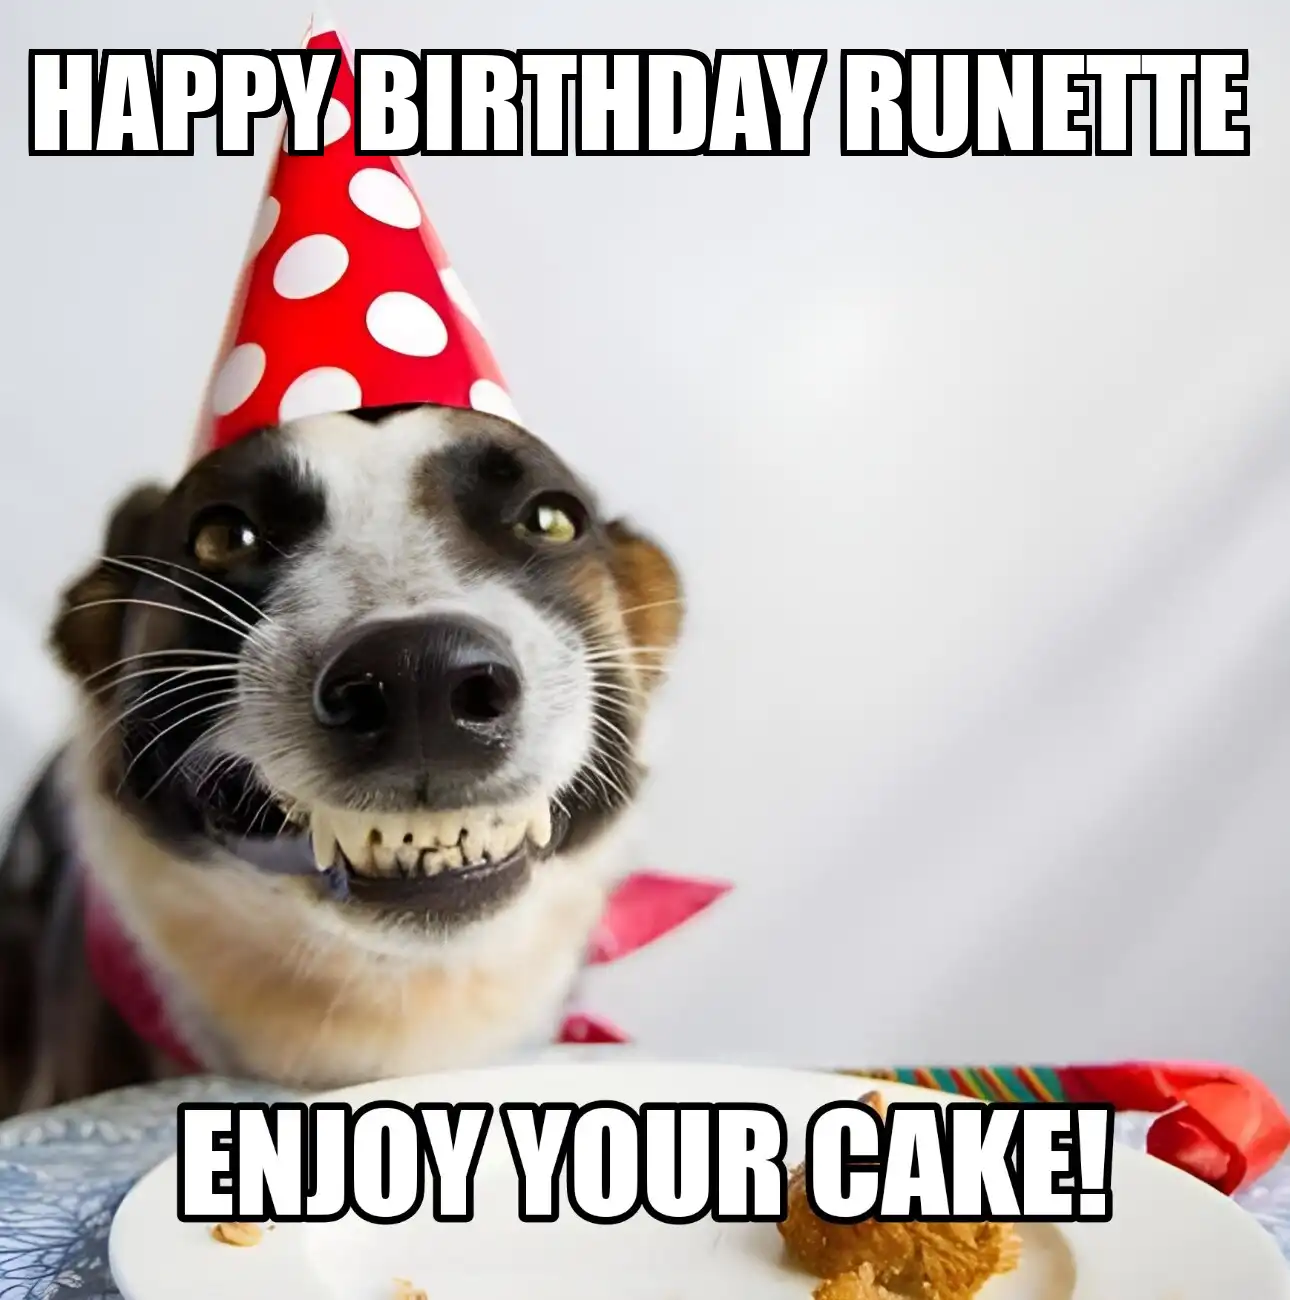 Happy Birthday Runette Enjoy Your Cake Dog Meme